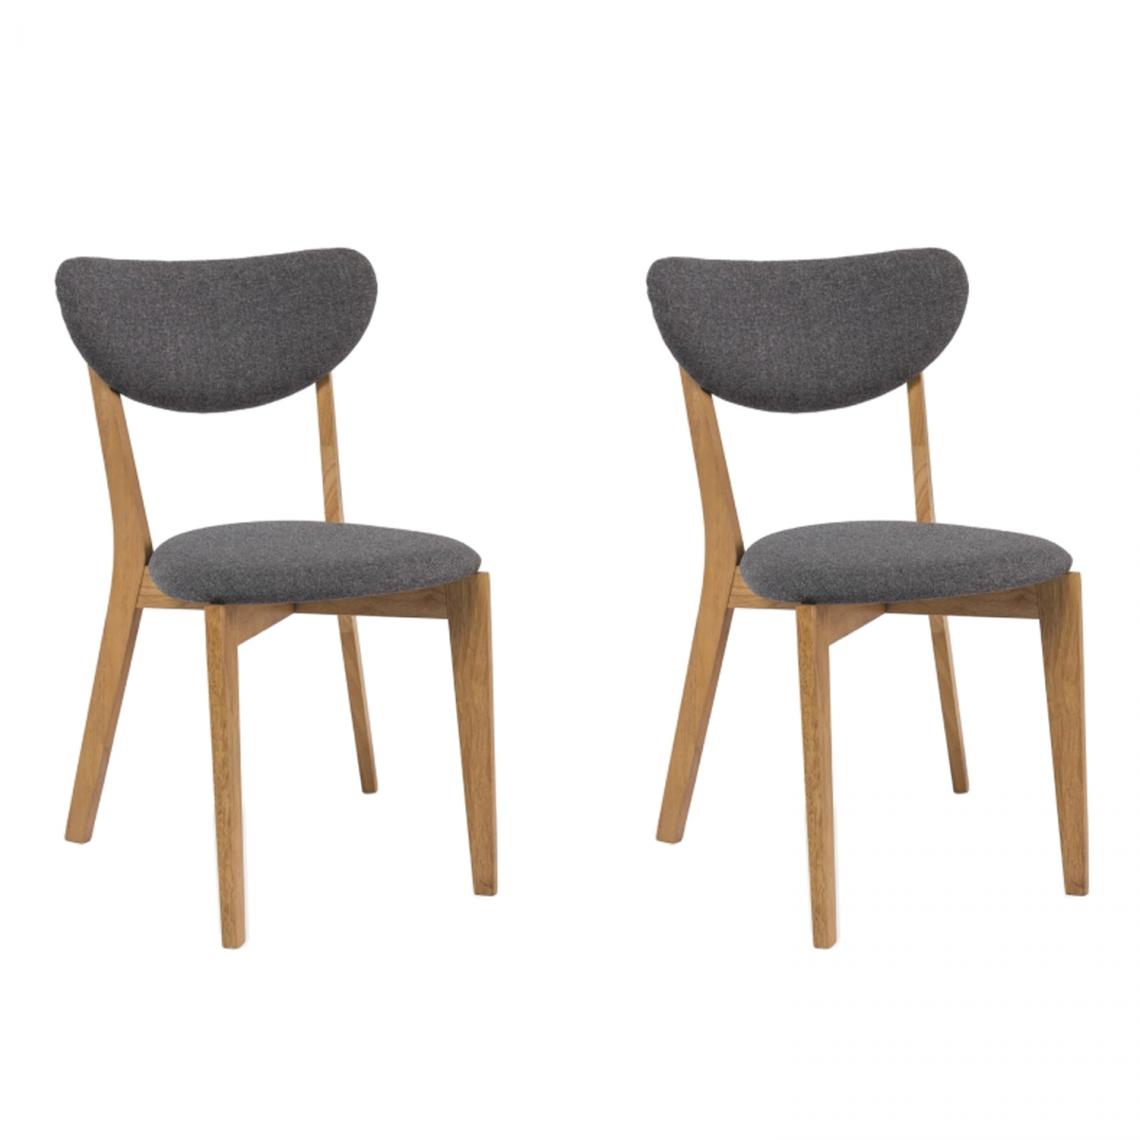 Hucoco - ANDRI - Lot de 2 chaises style vintage - Dimensions 78x42x45 cm - Tissu haute qualité - Chaise rétro - Gris - Chaises